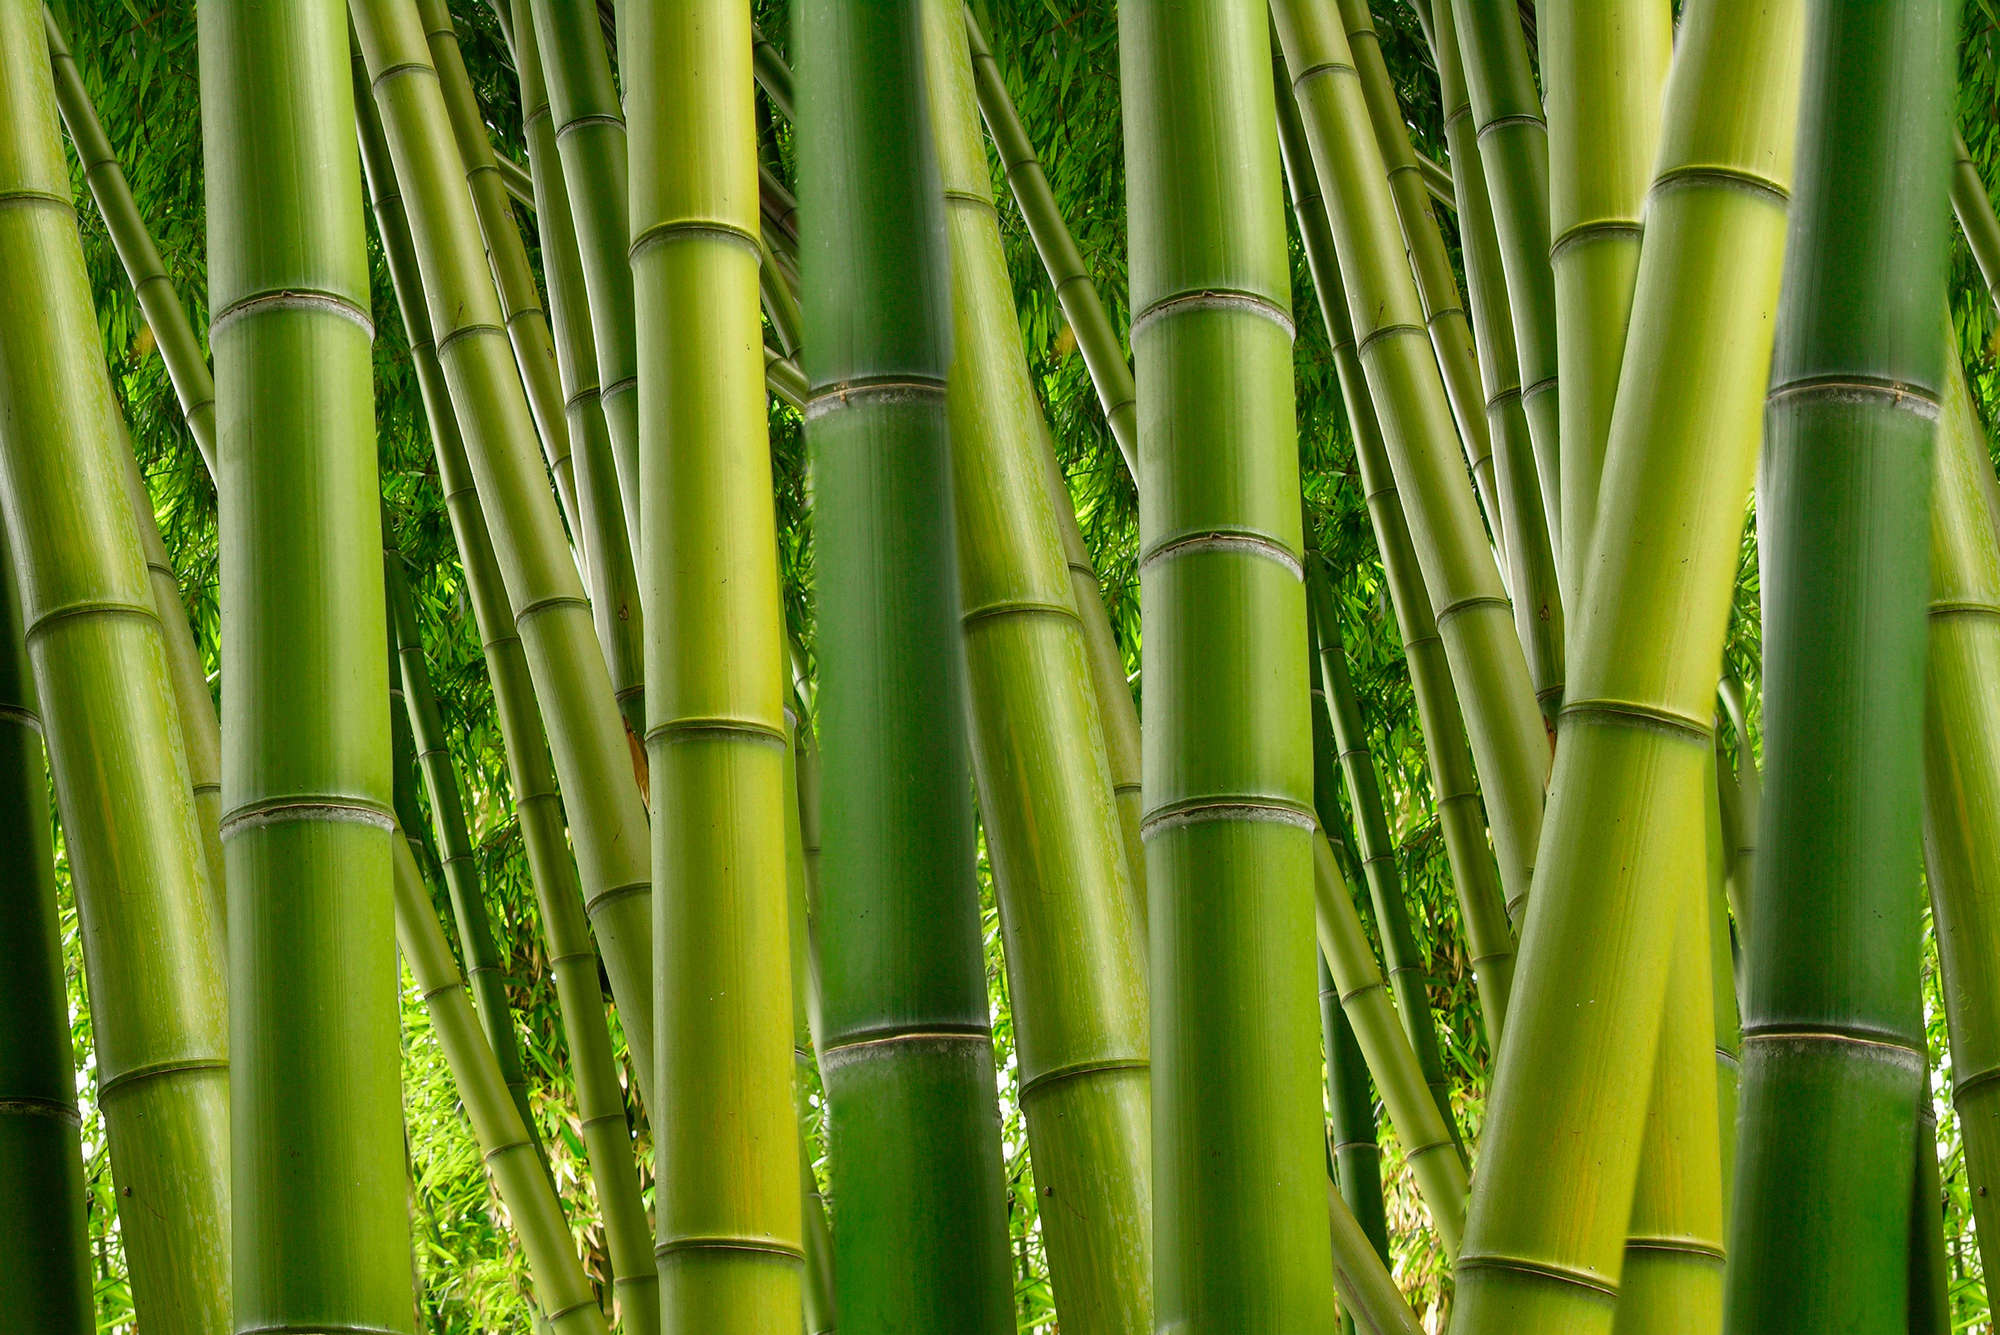             Papel pintado de naturaleza con motivo de bosque de bambú sobre tela no tejida con textura
        